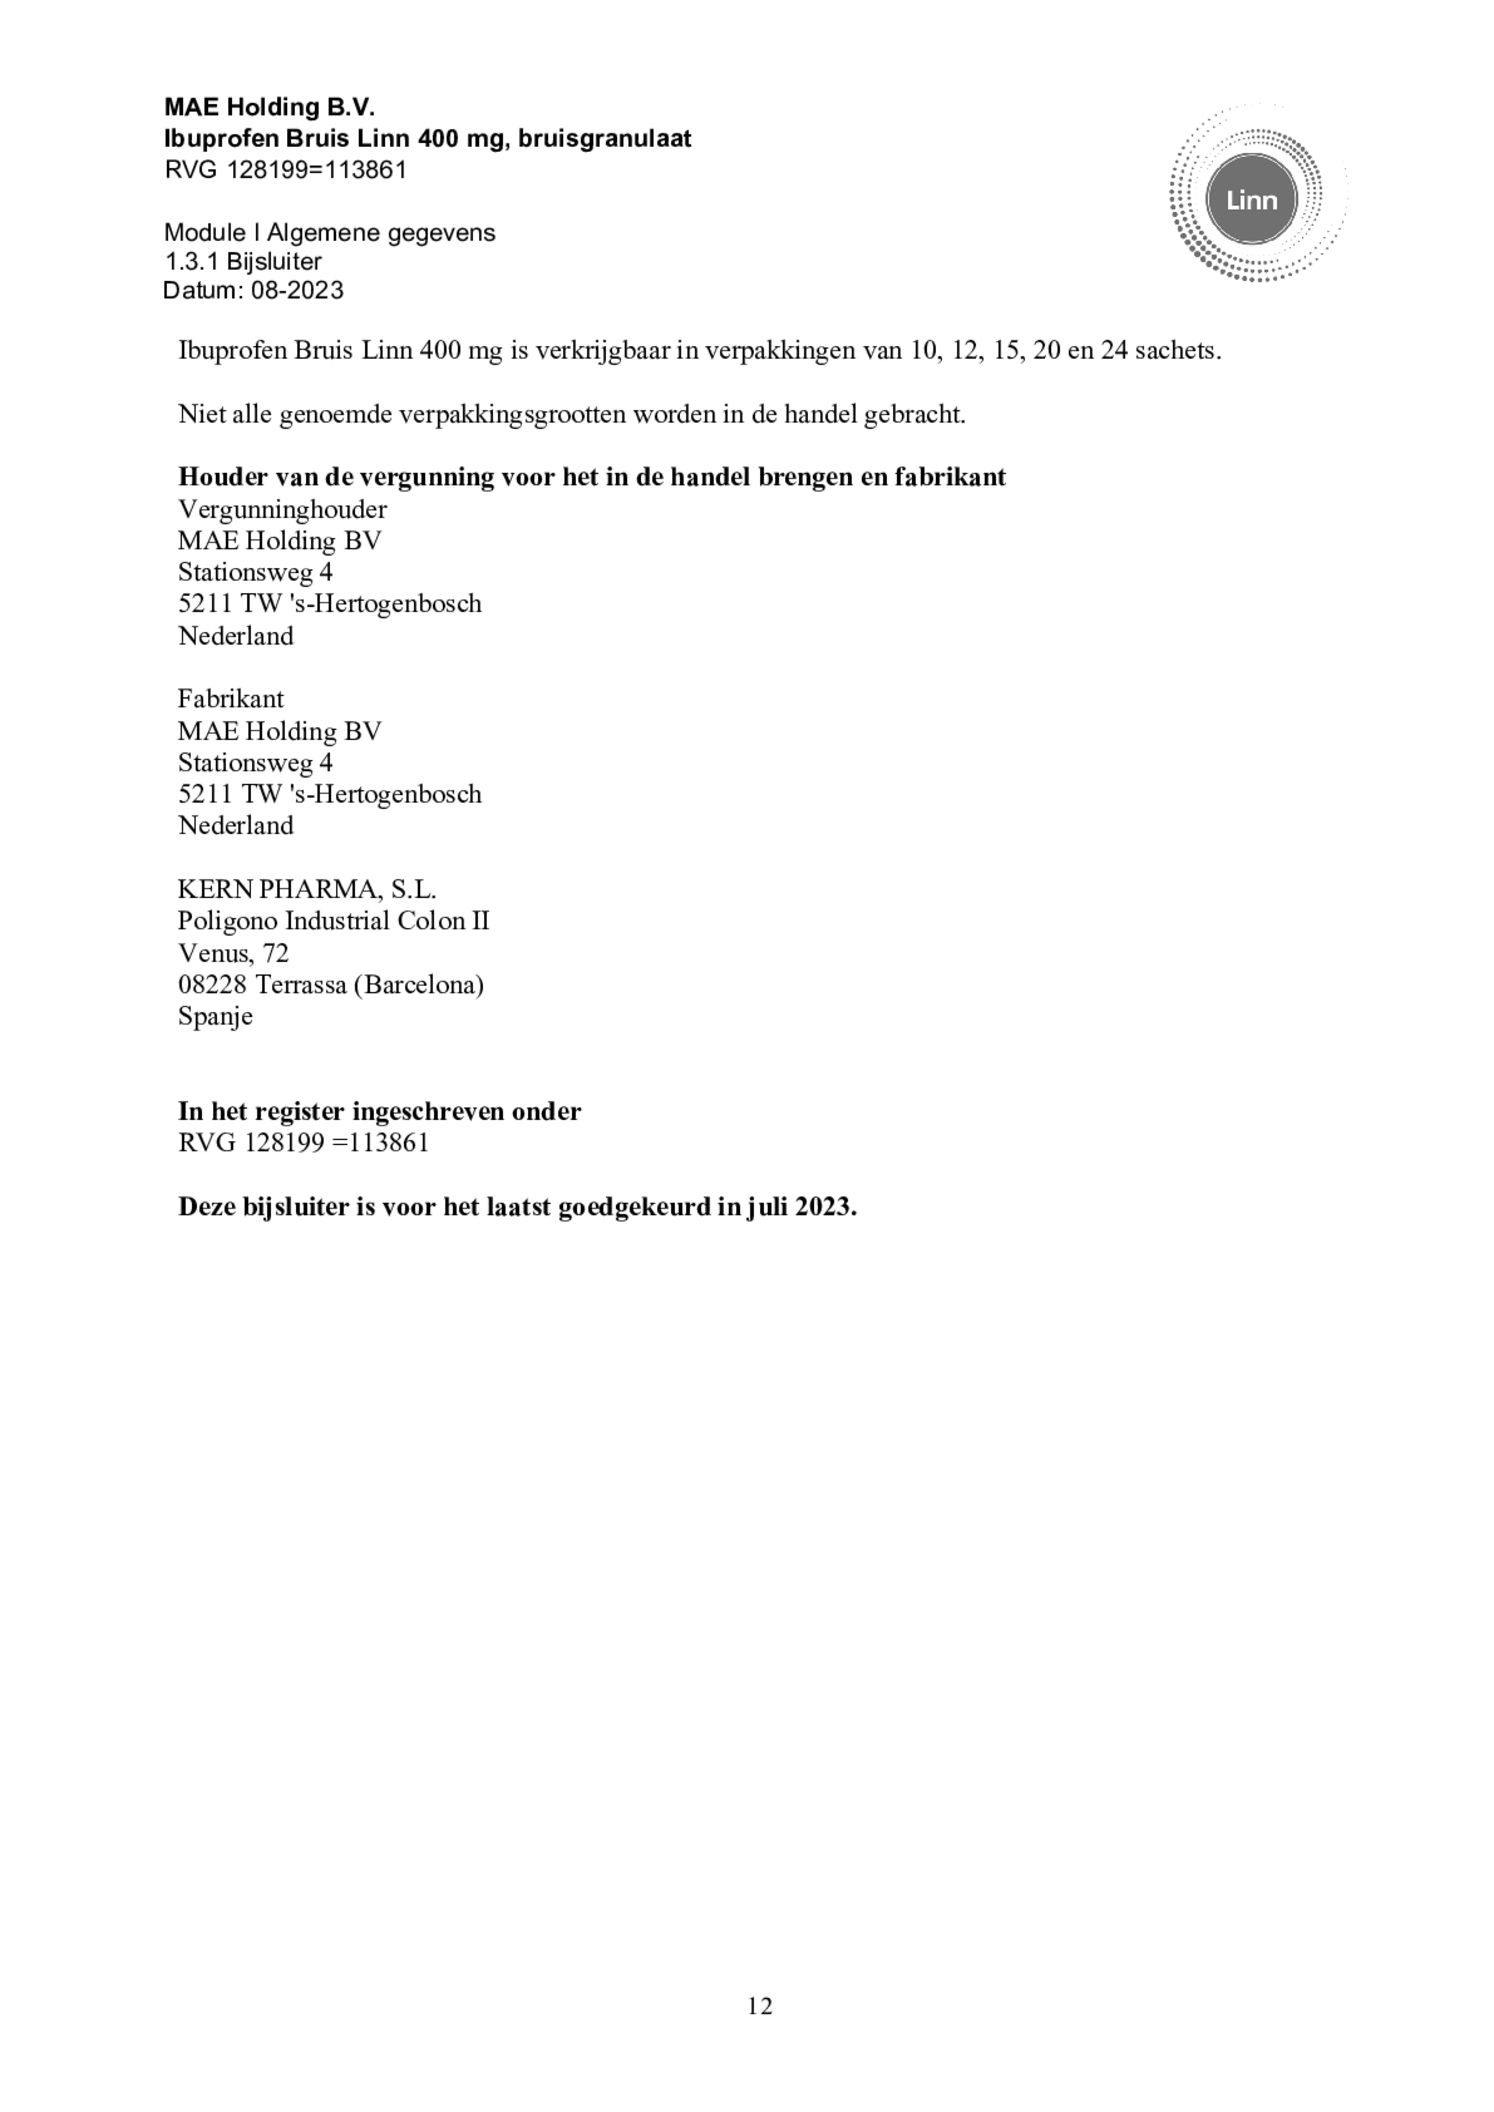 Ibuprofen Bruis Sachets 400mg afbeelding van document #12, bijsluiter